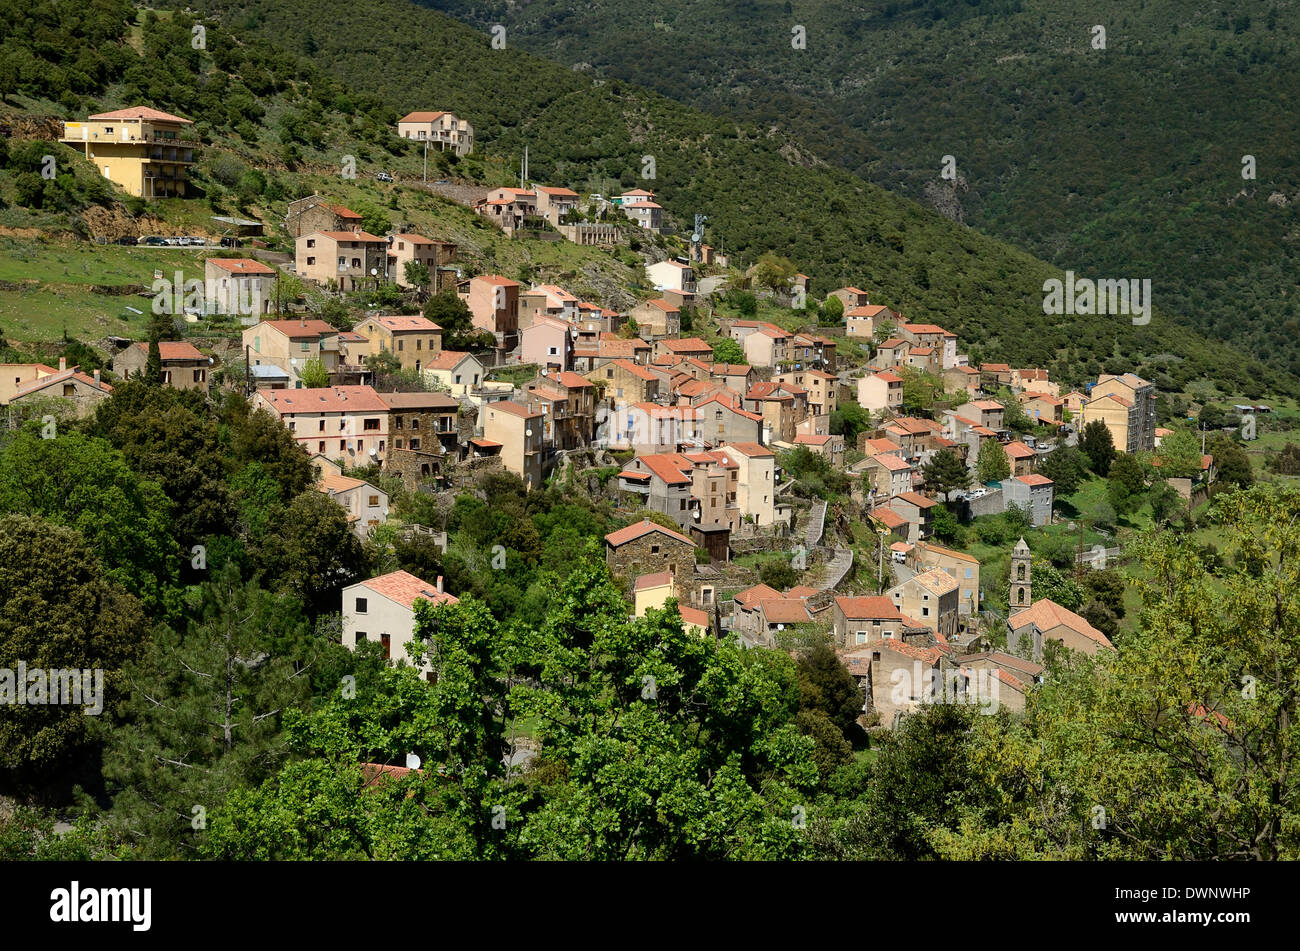 Mountain village of Asco, Asco Valley, Corsica, France Stock Photo